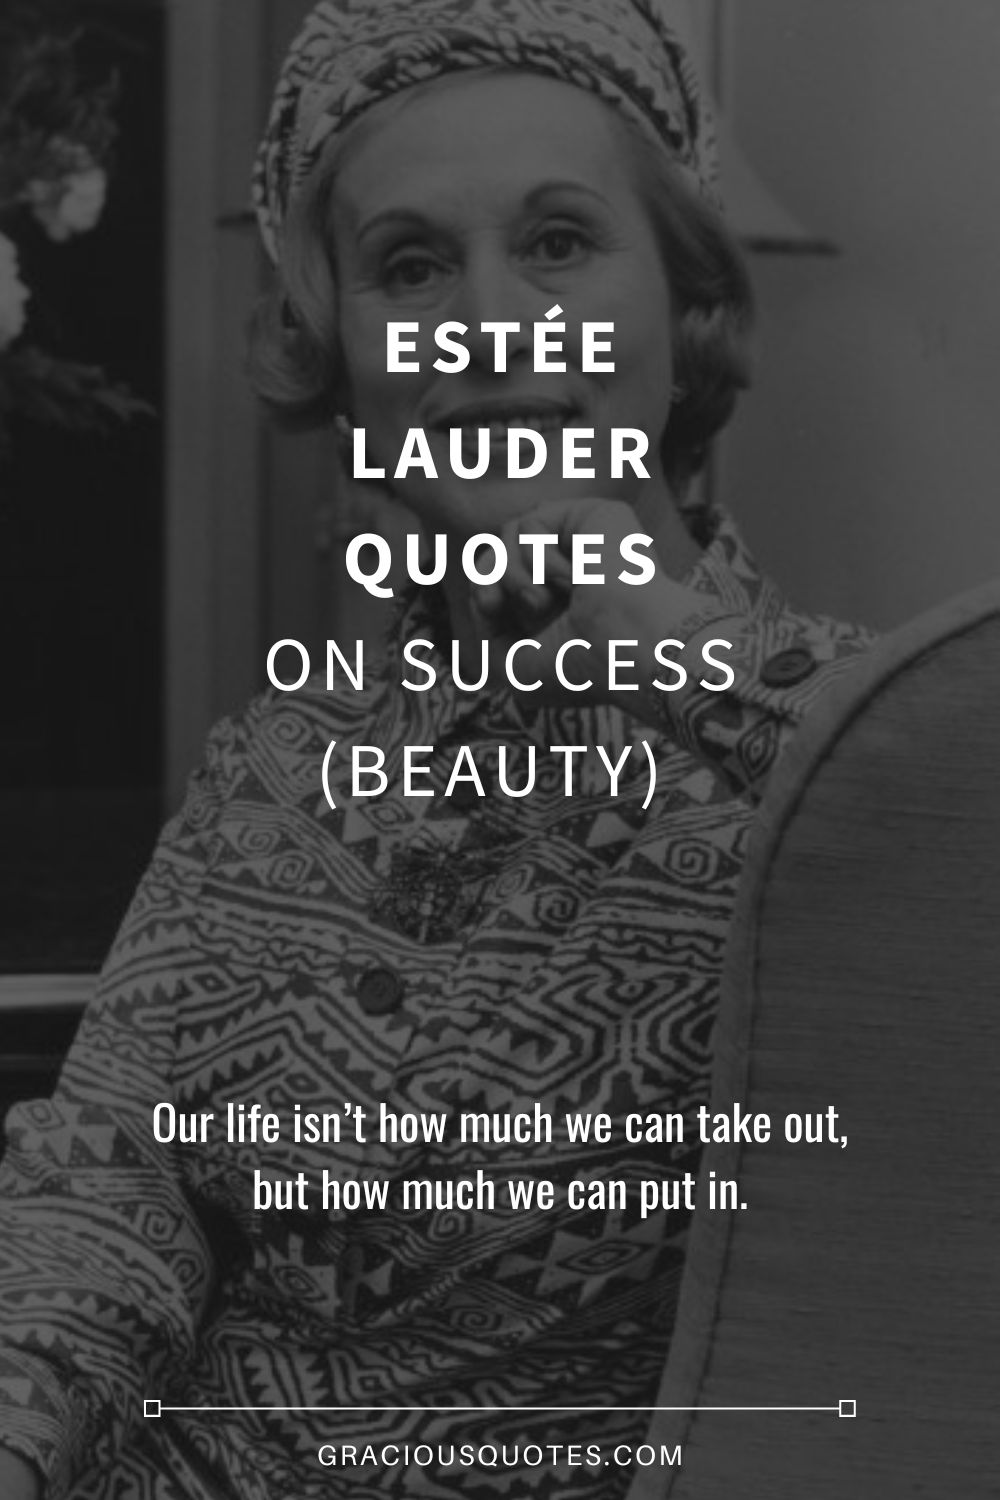 Estée Lauder Quotes on Success (BEAUTY) - Gracious Quotes